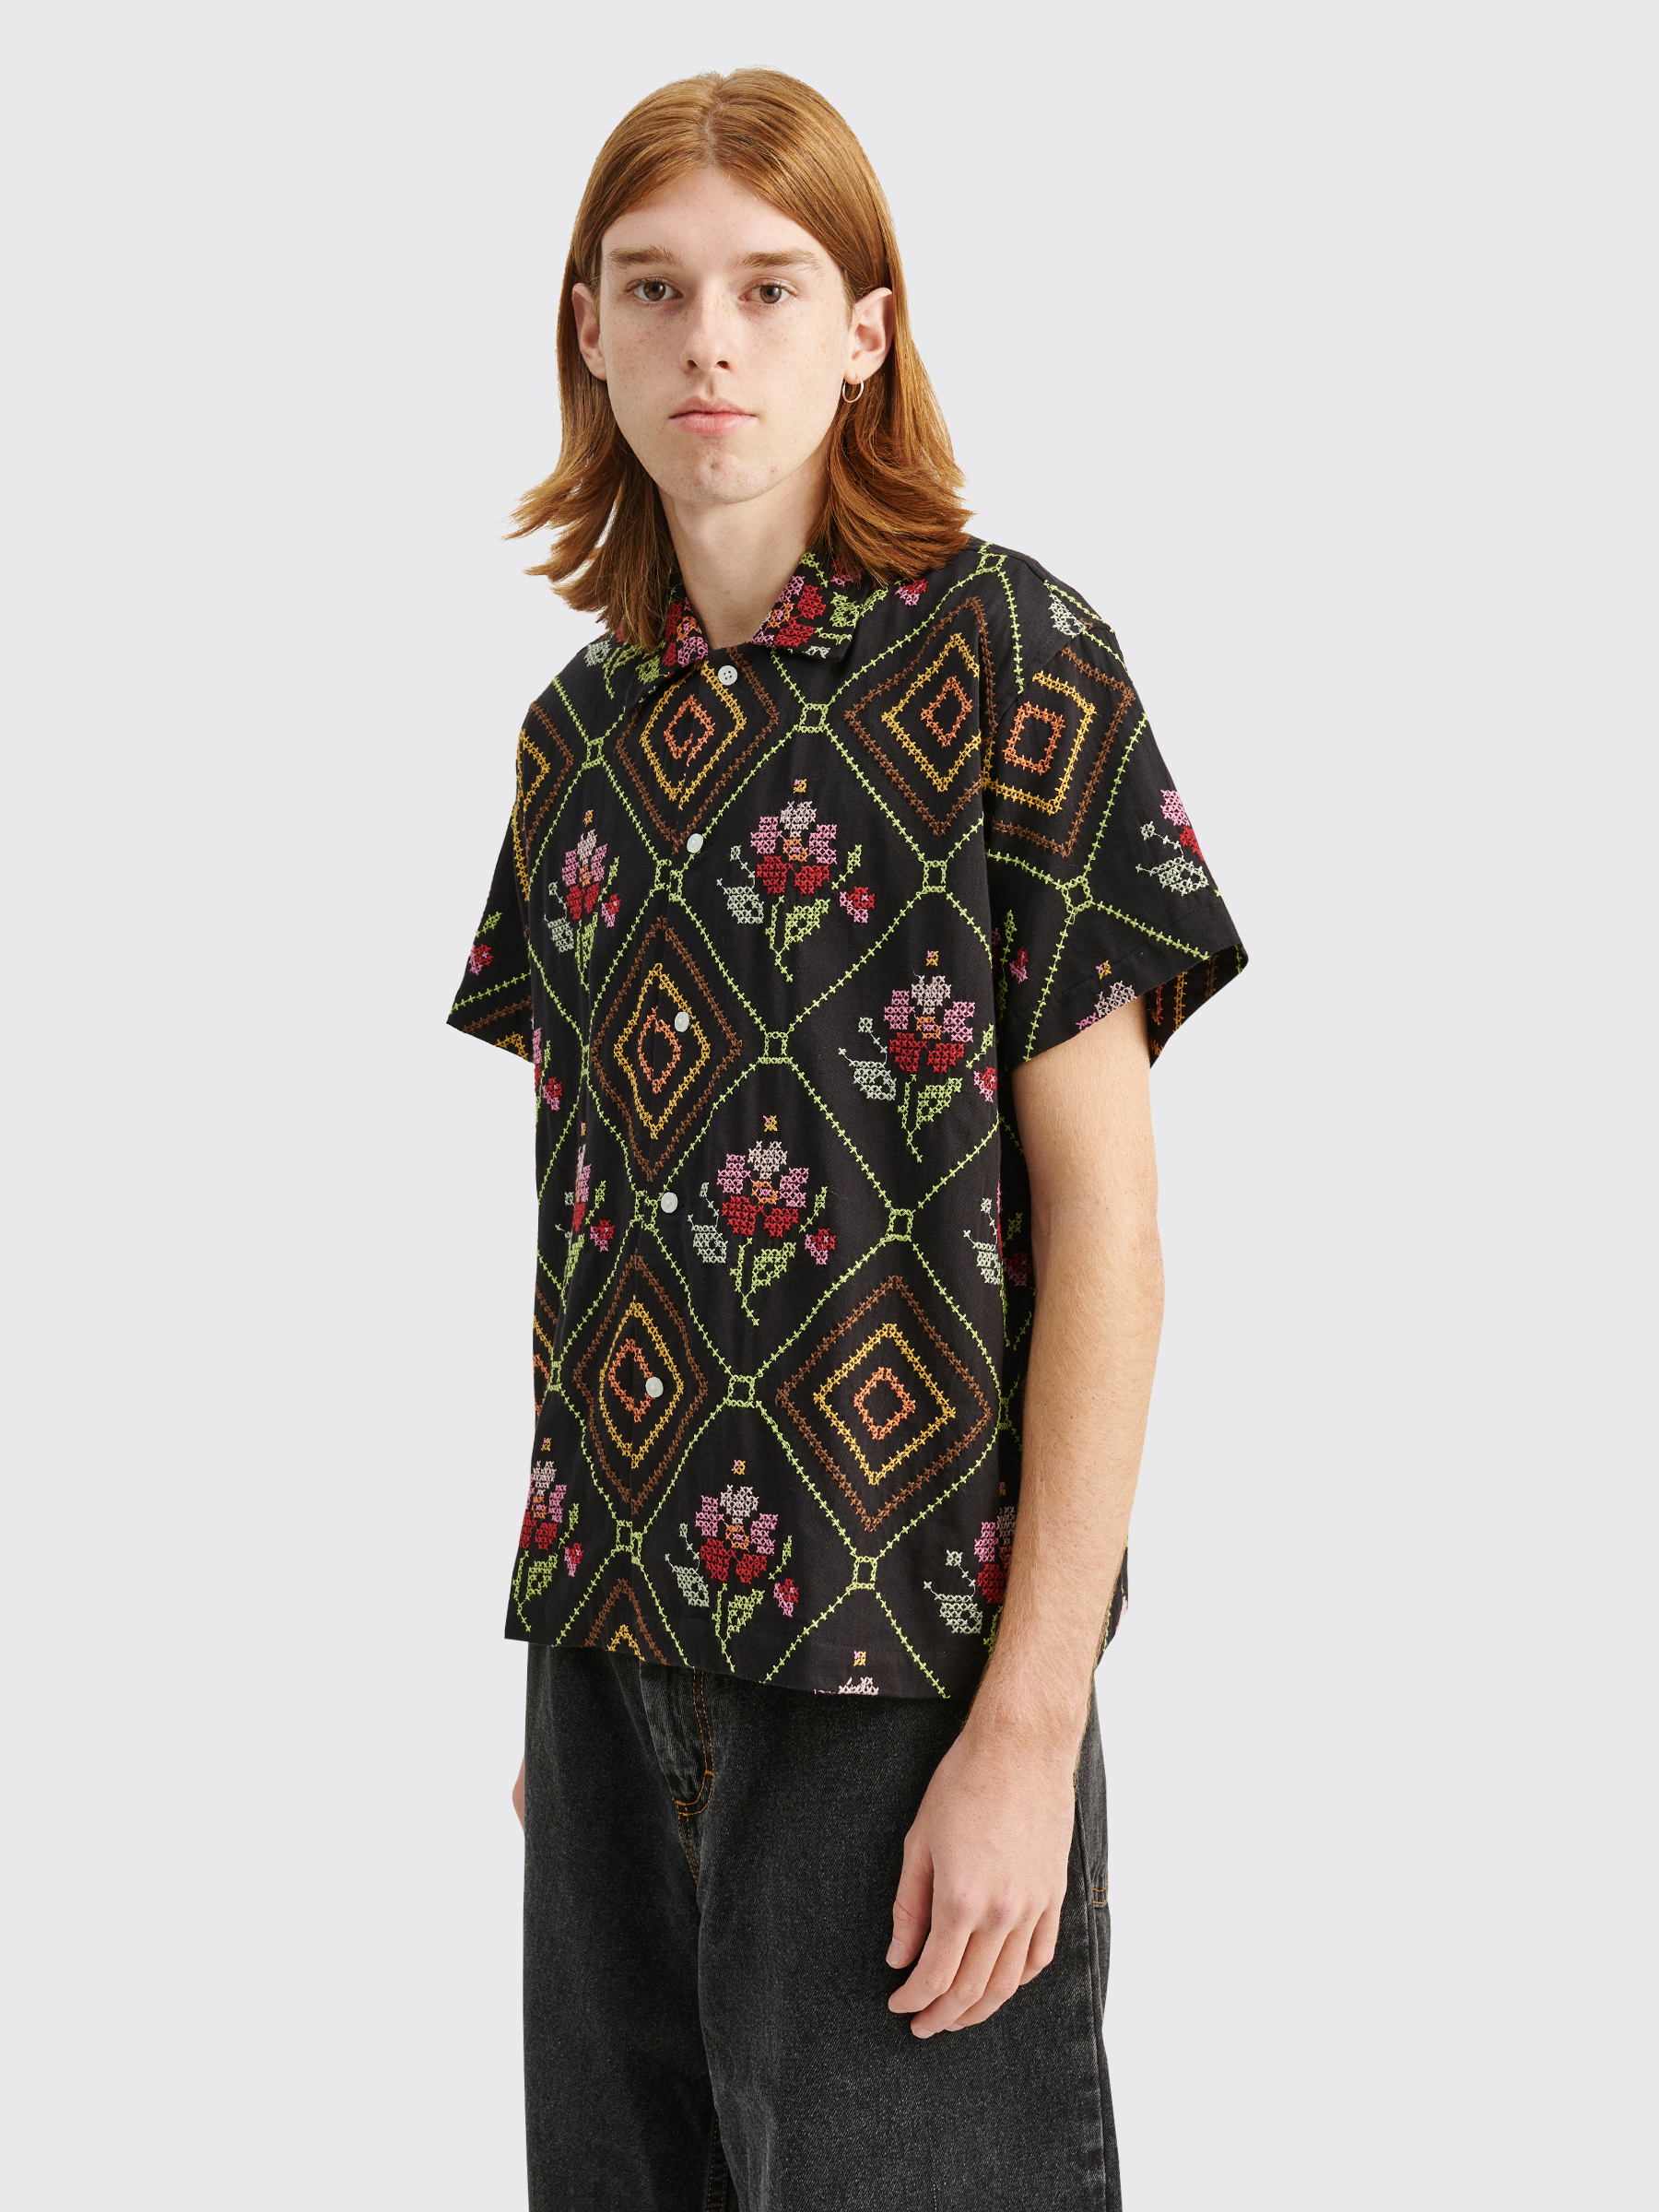 Très Bien - Bode Needlepoint Begonia Shirt Black / Multi Color